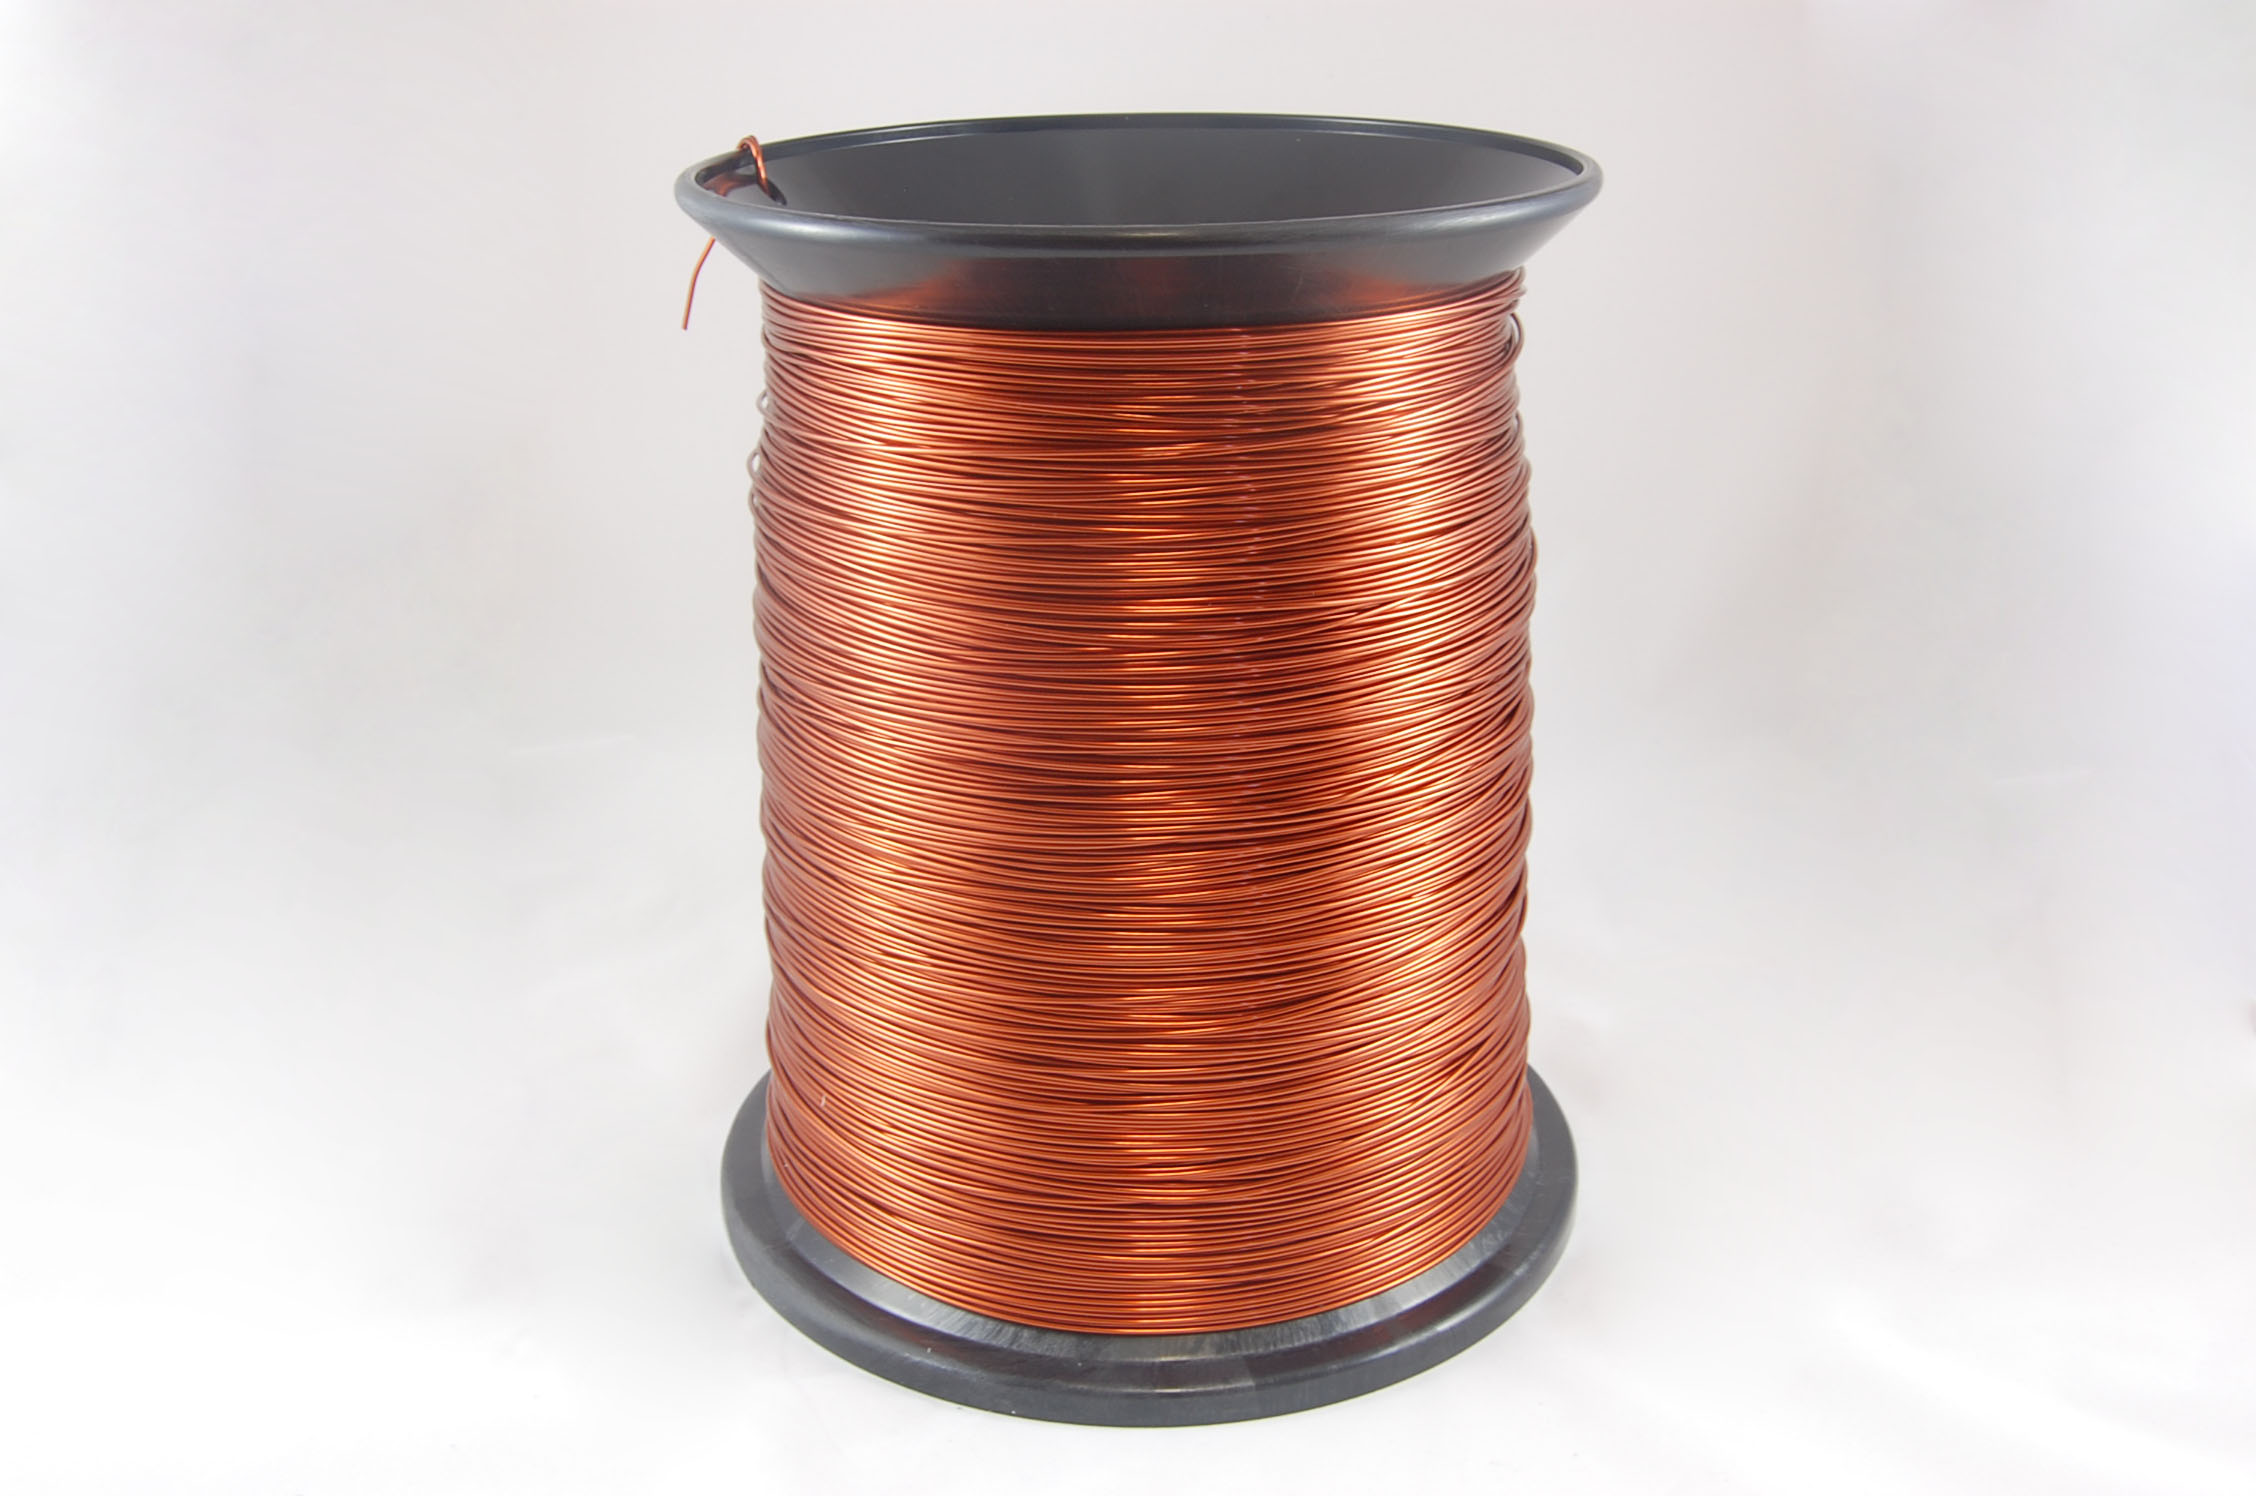 #17 Heavy GP/MR-200 Round MW 35 Copper Magnet Wire 200°C, copper, 85 LB box (average wght.)